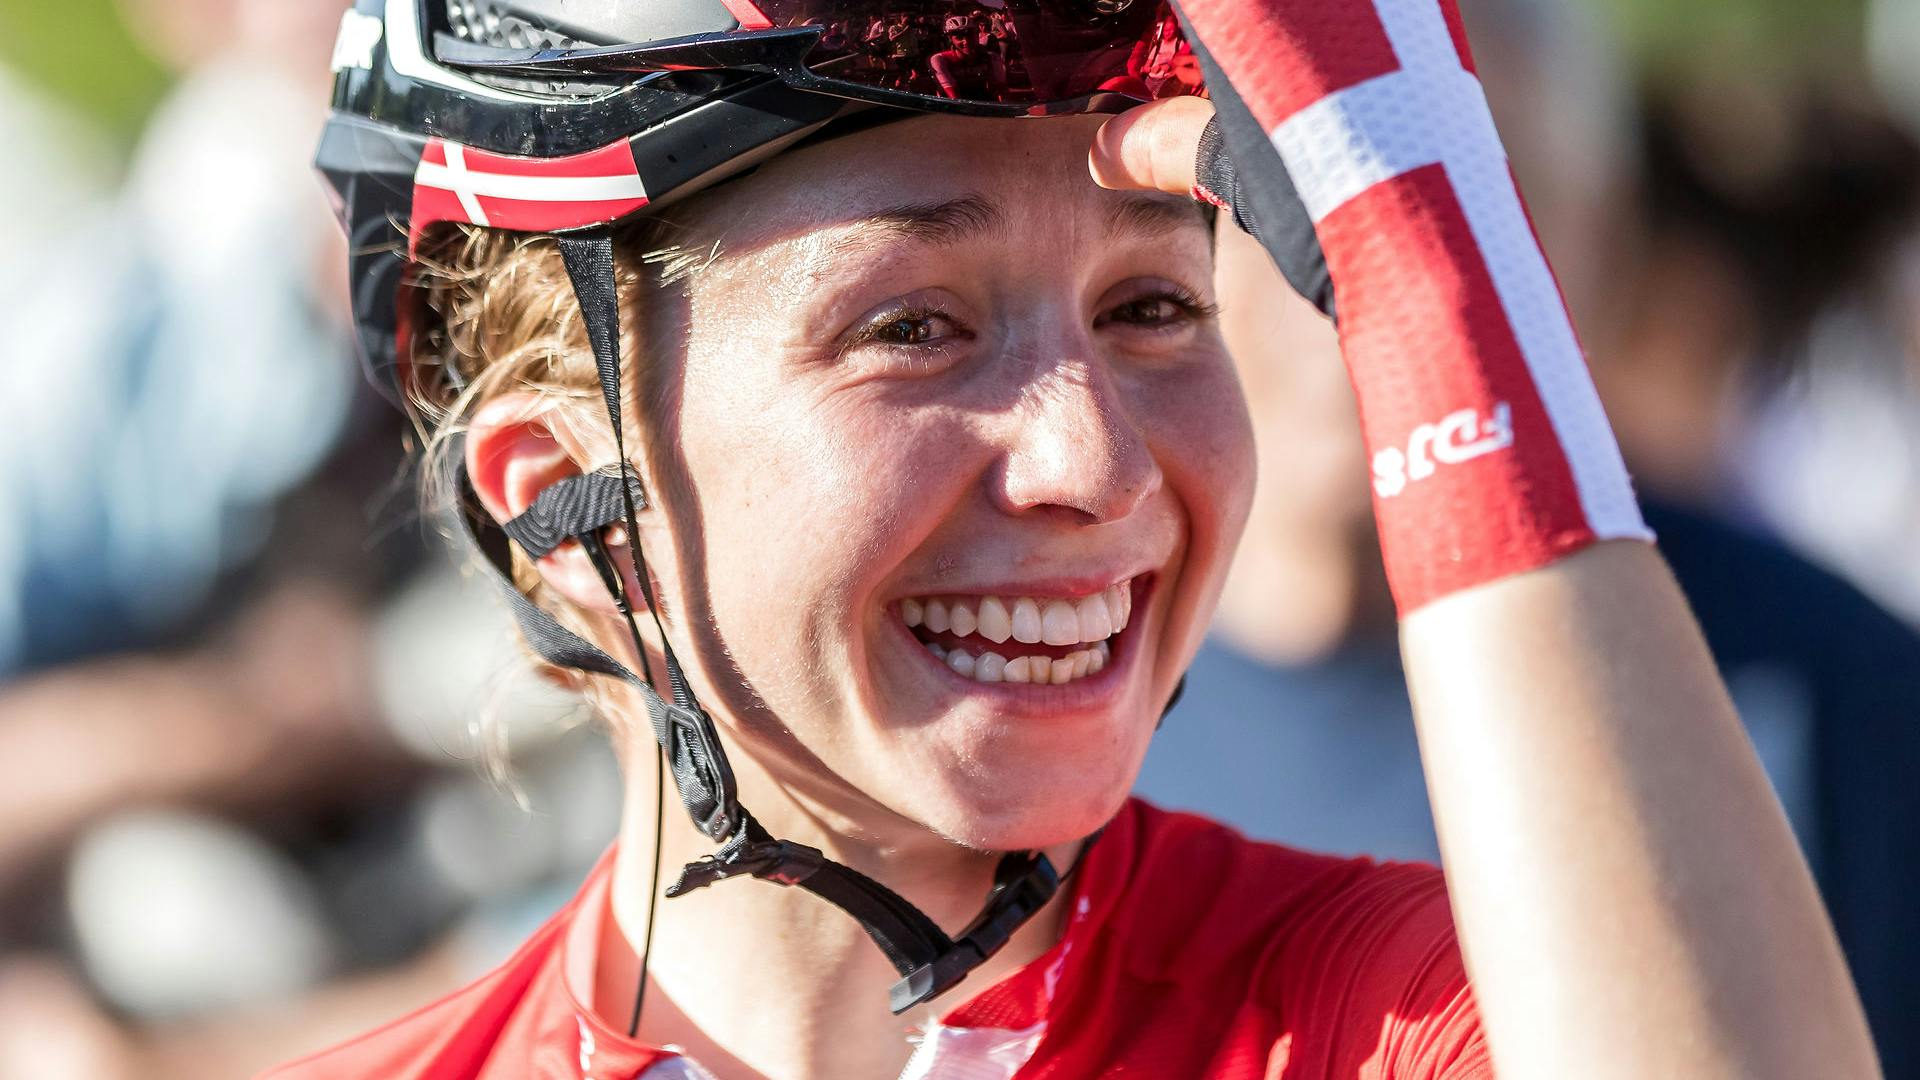 Cykelrytter Cecilie Uttrup Ludwig vinder World Tour-etapeløbet Tour of Scandinavia samlet.&nbsp;